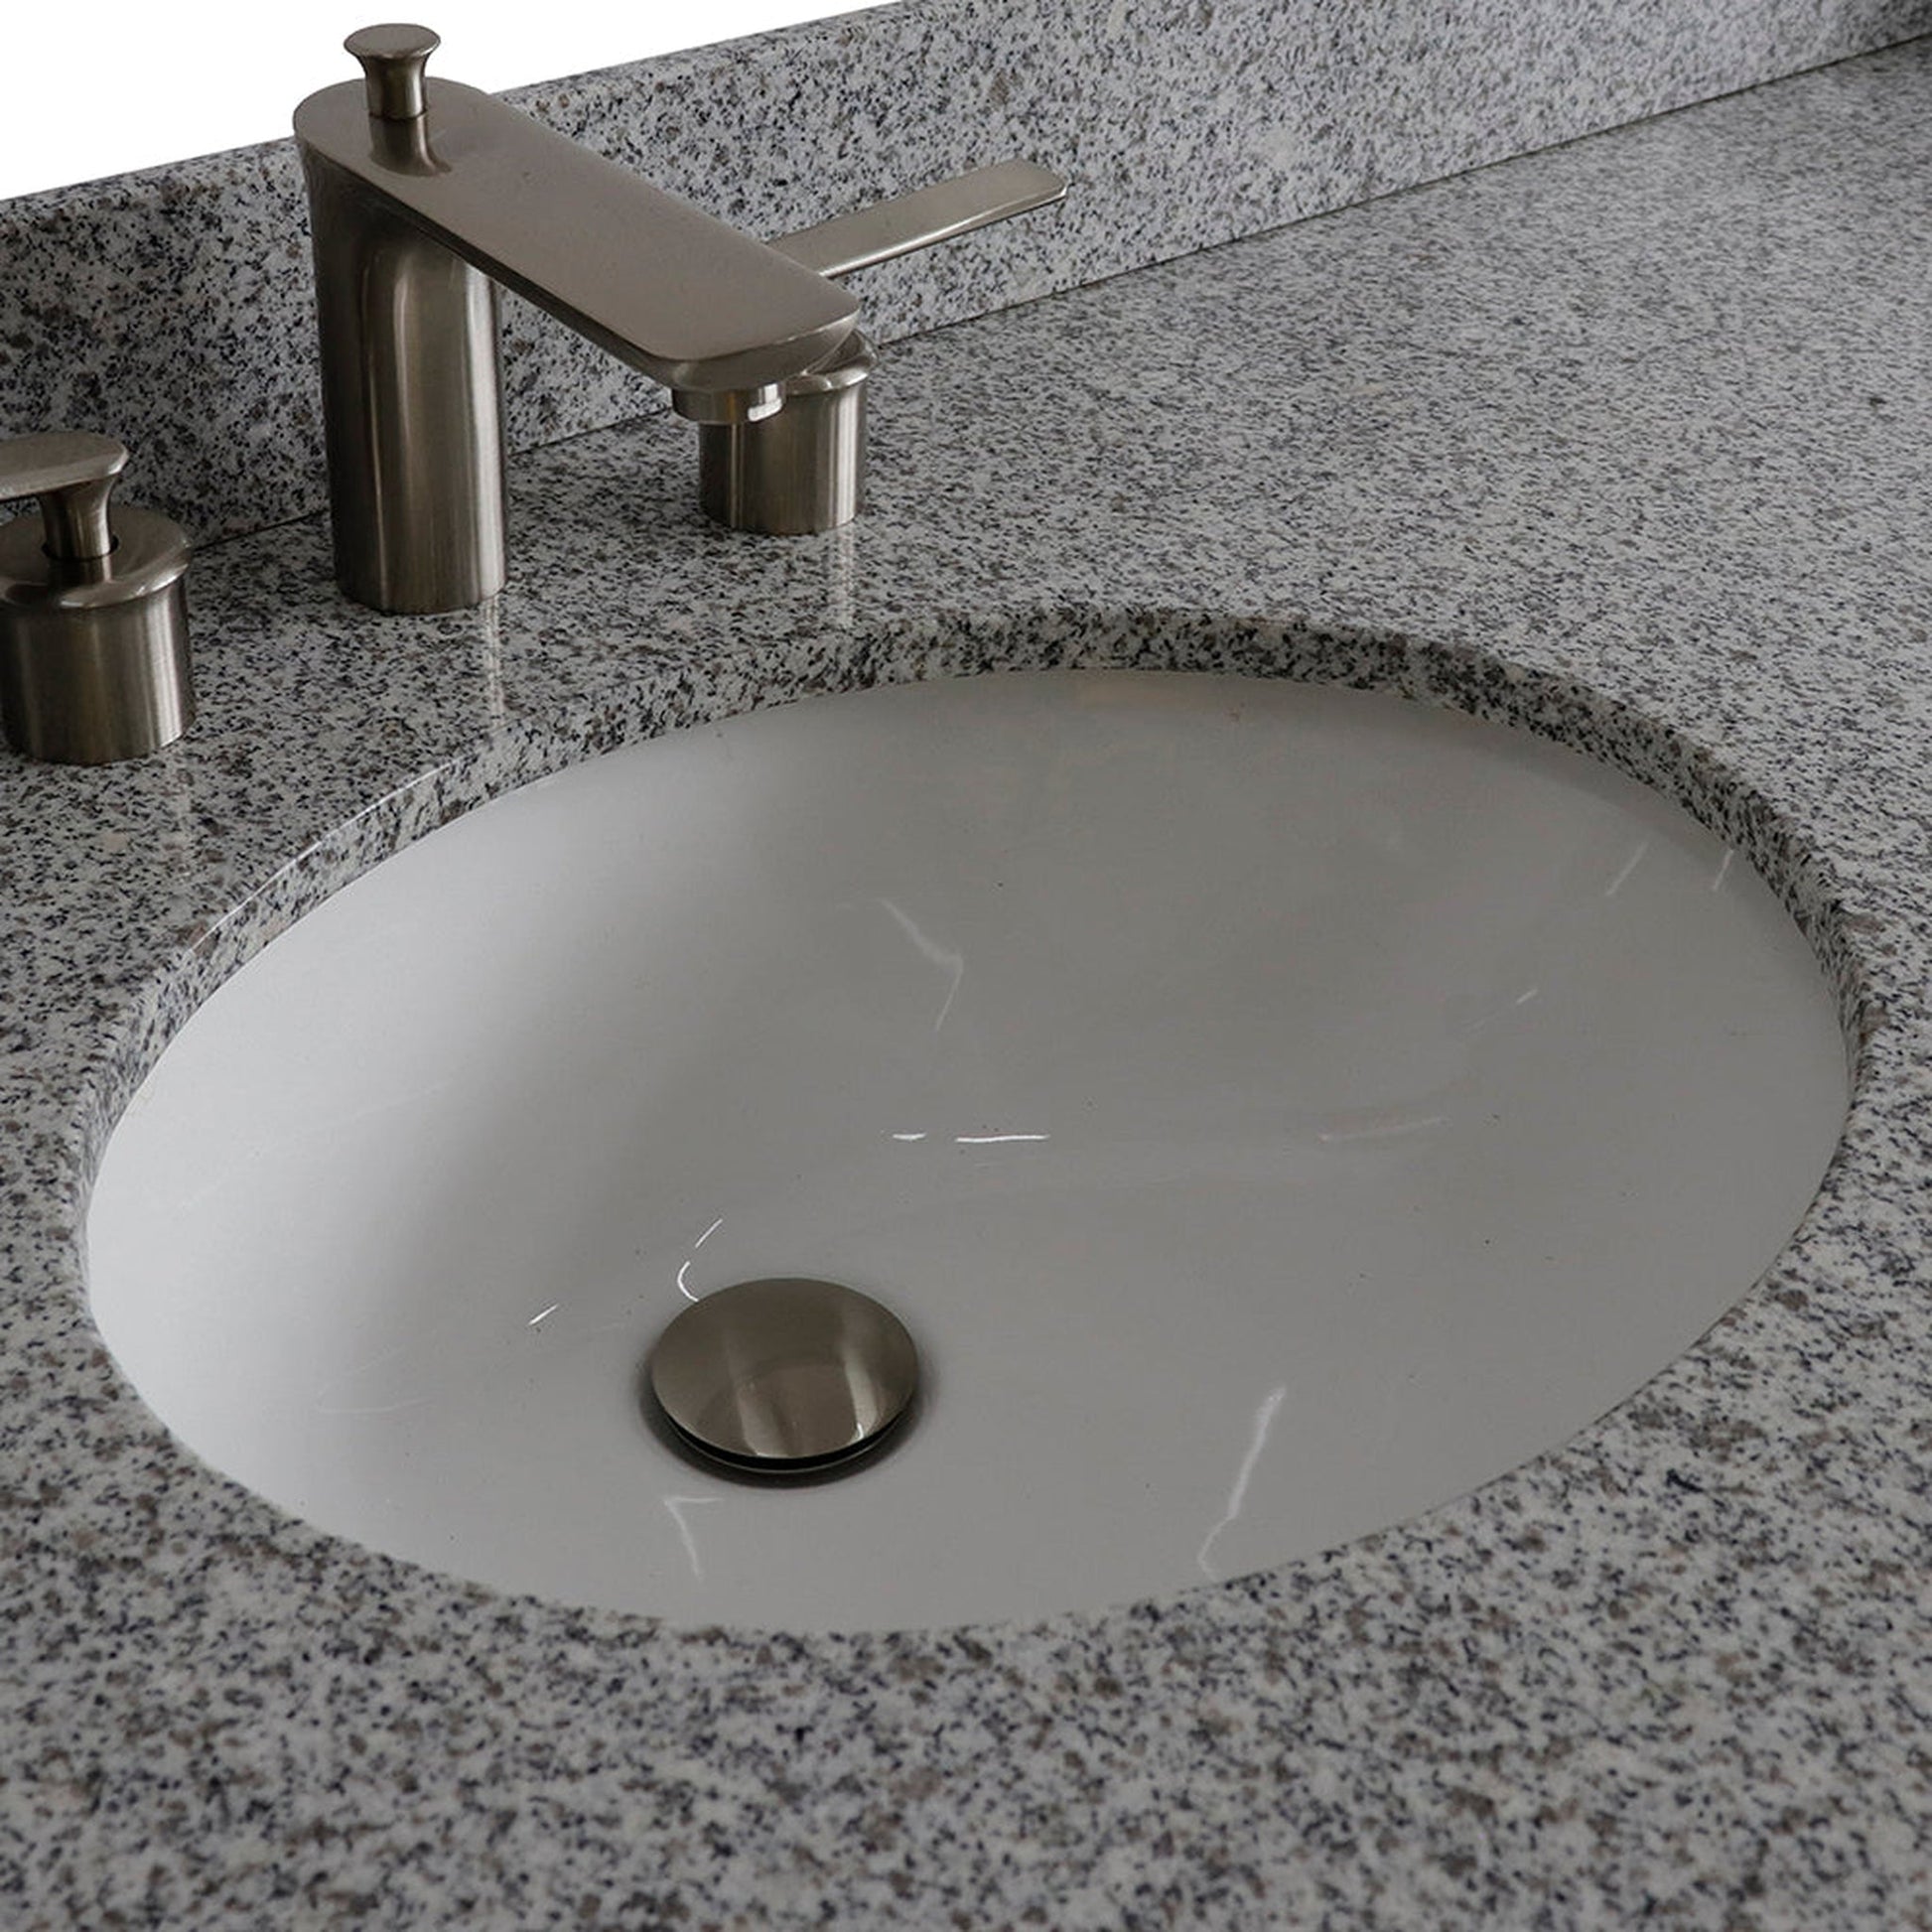 Bellaterra Home Terni 61" 4-Door 3-Drawer Dark Gray Freestanding Vanity Set With Ceramic Double Undermount Oval Sink And Gray Granite Top